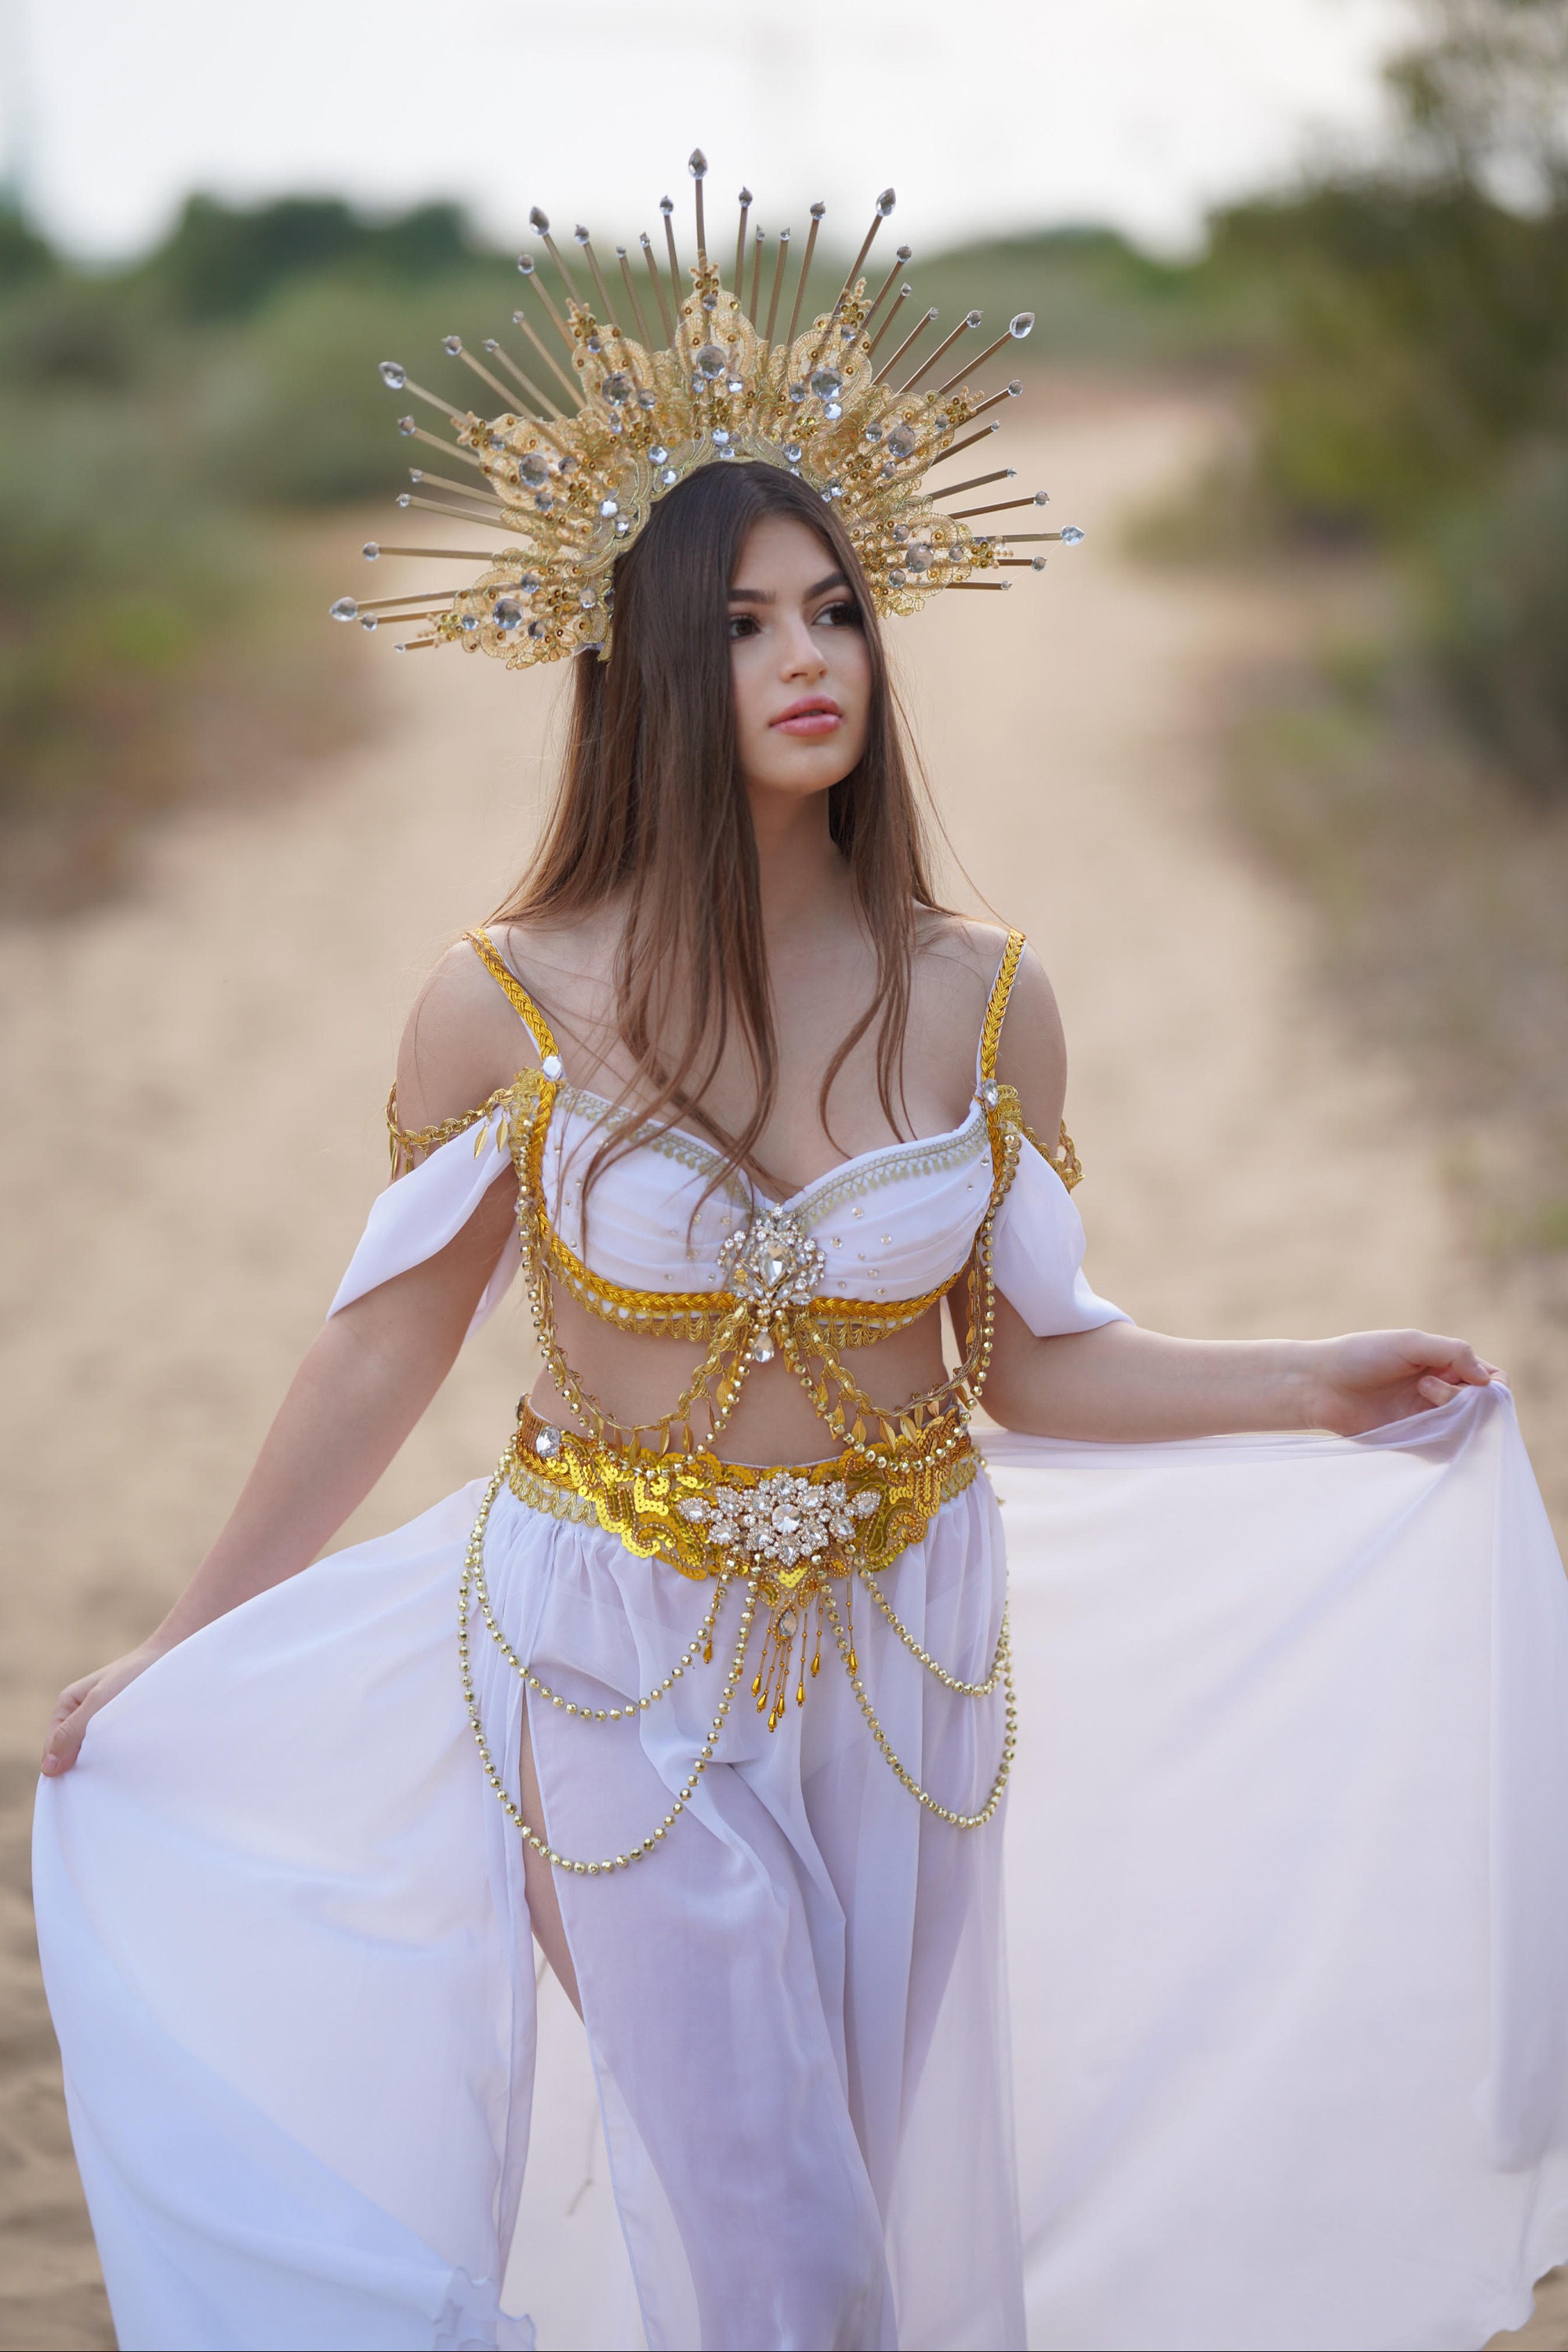 Greek Goddess Costume, Goddess Costume, Fantasy Dress, Gold